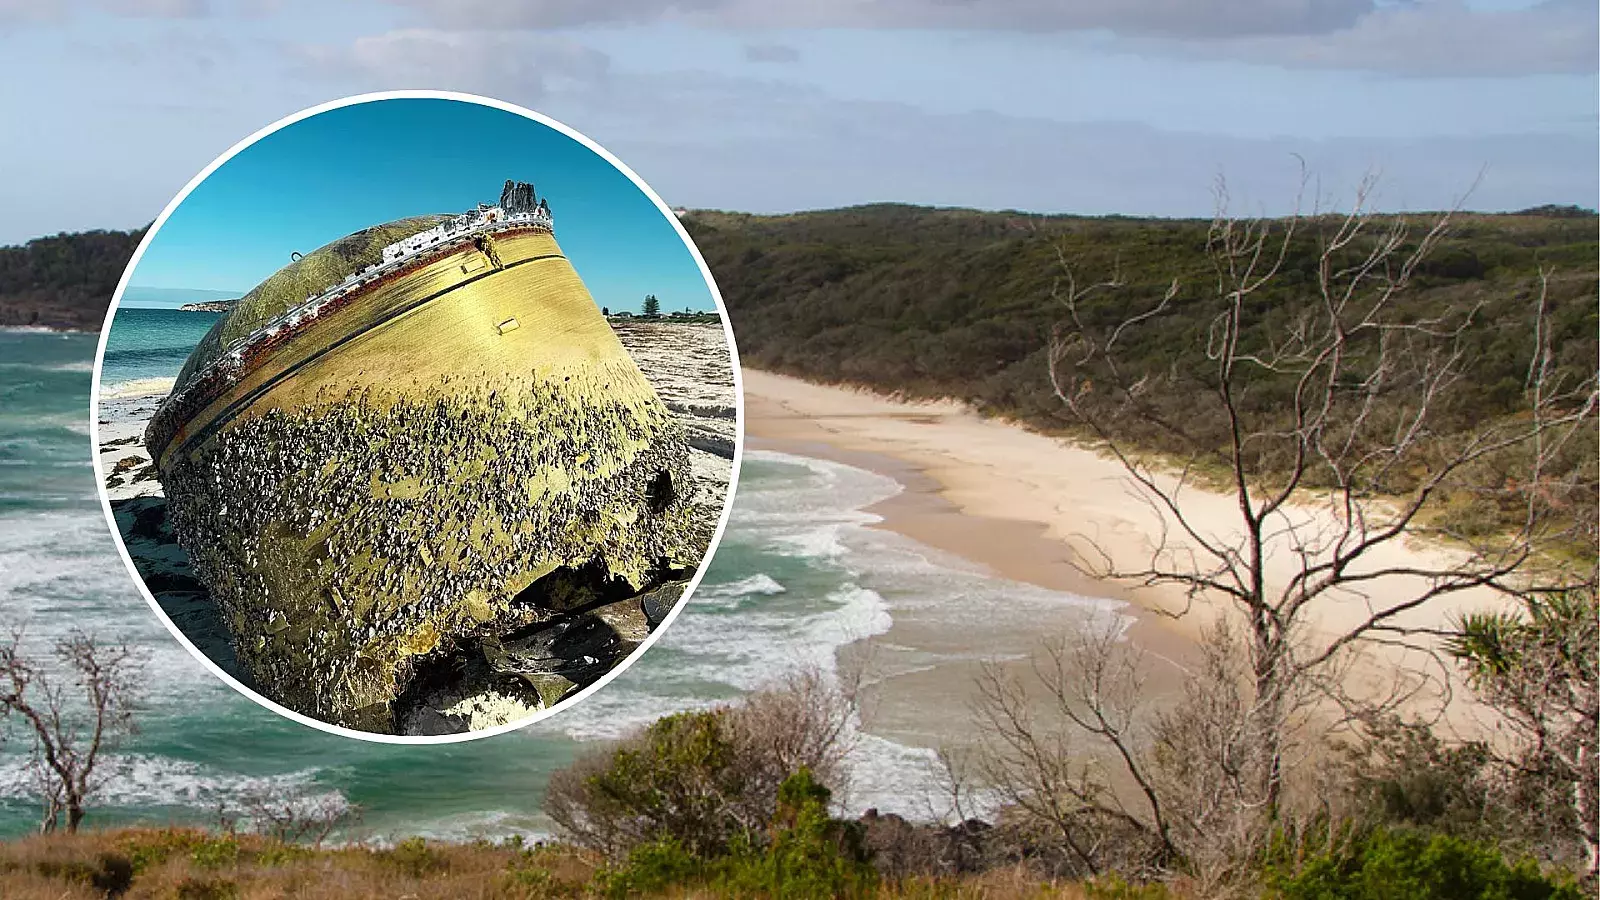 Aparece extraño objeto no identificado en playa de Australia; sus orígenes son desconocidos